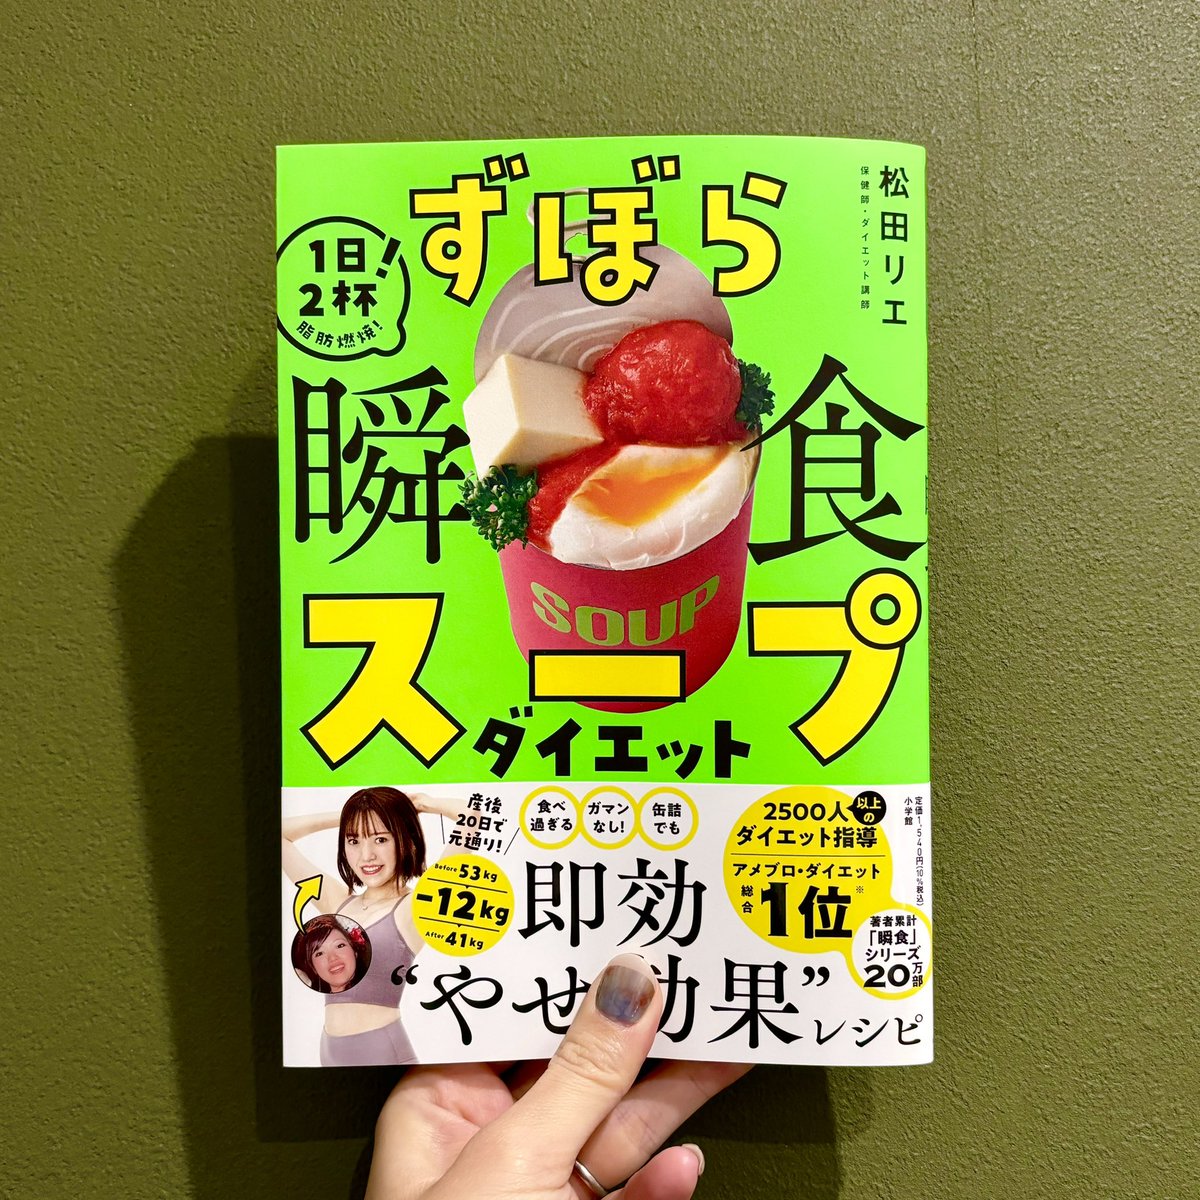 【お仕事】 ダイエット講師の松田リエさん著書 「ずぼら瞬食ダイエットスープ」(小学館)の冒頭漫画を担当させていただきました! レシピは簡単で美味しそうなのはもちろんなのですが、ダイエットのコラムが面白かったです。痩せ調味料とか選び方とか大変勉強になりました☺️